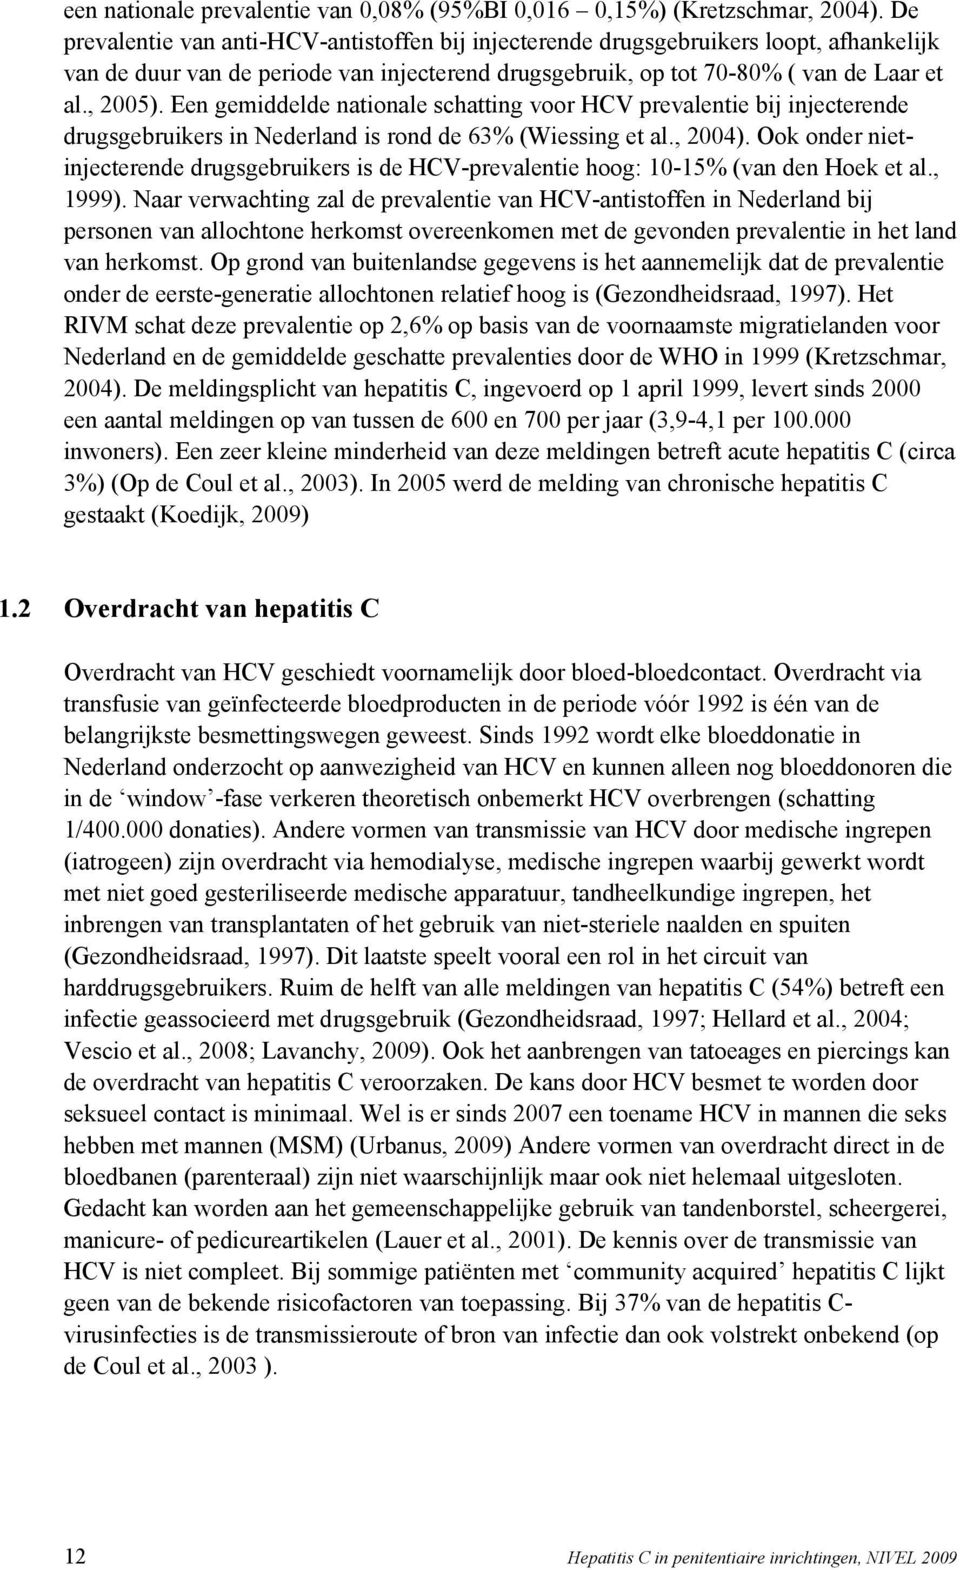 Een gemiddelde nationale schatting voor HCV prevalentie bij injecterende drugsgebruikers in Nederland is rond de 63% (Wiessing et al., 2004).